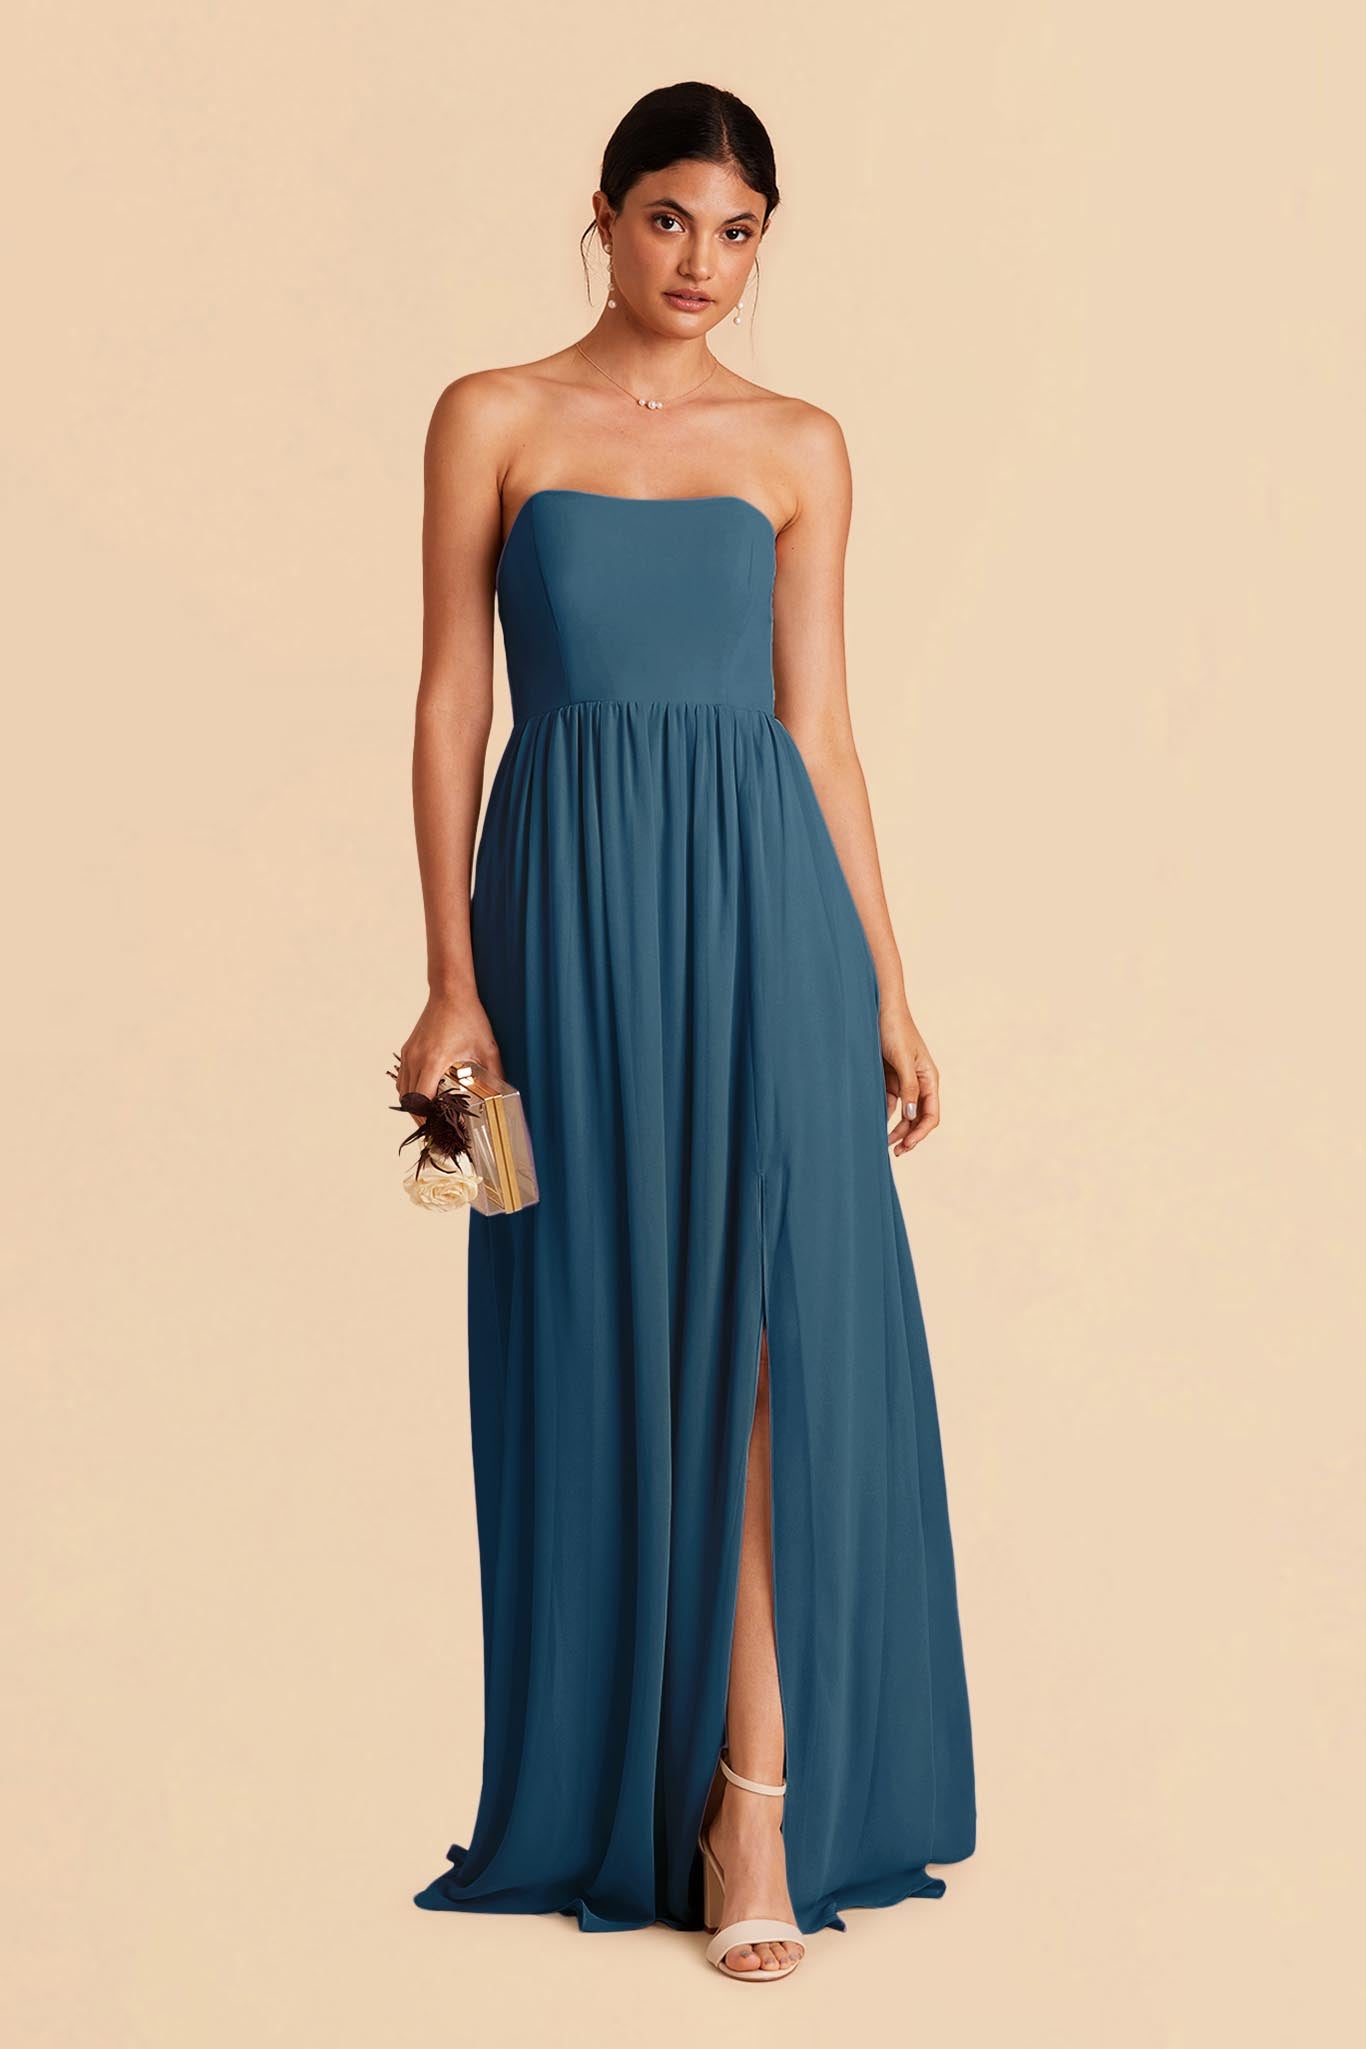 August Convertible Dress - Ocean Blue